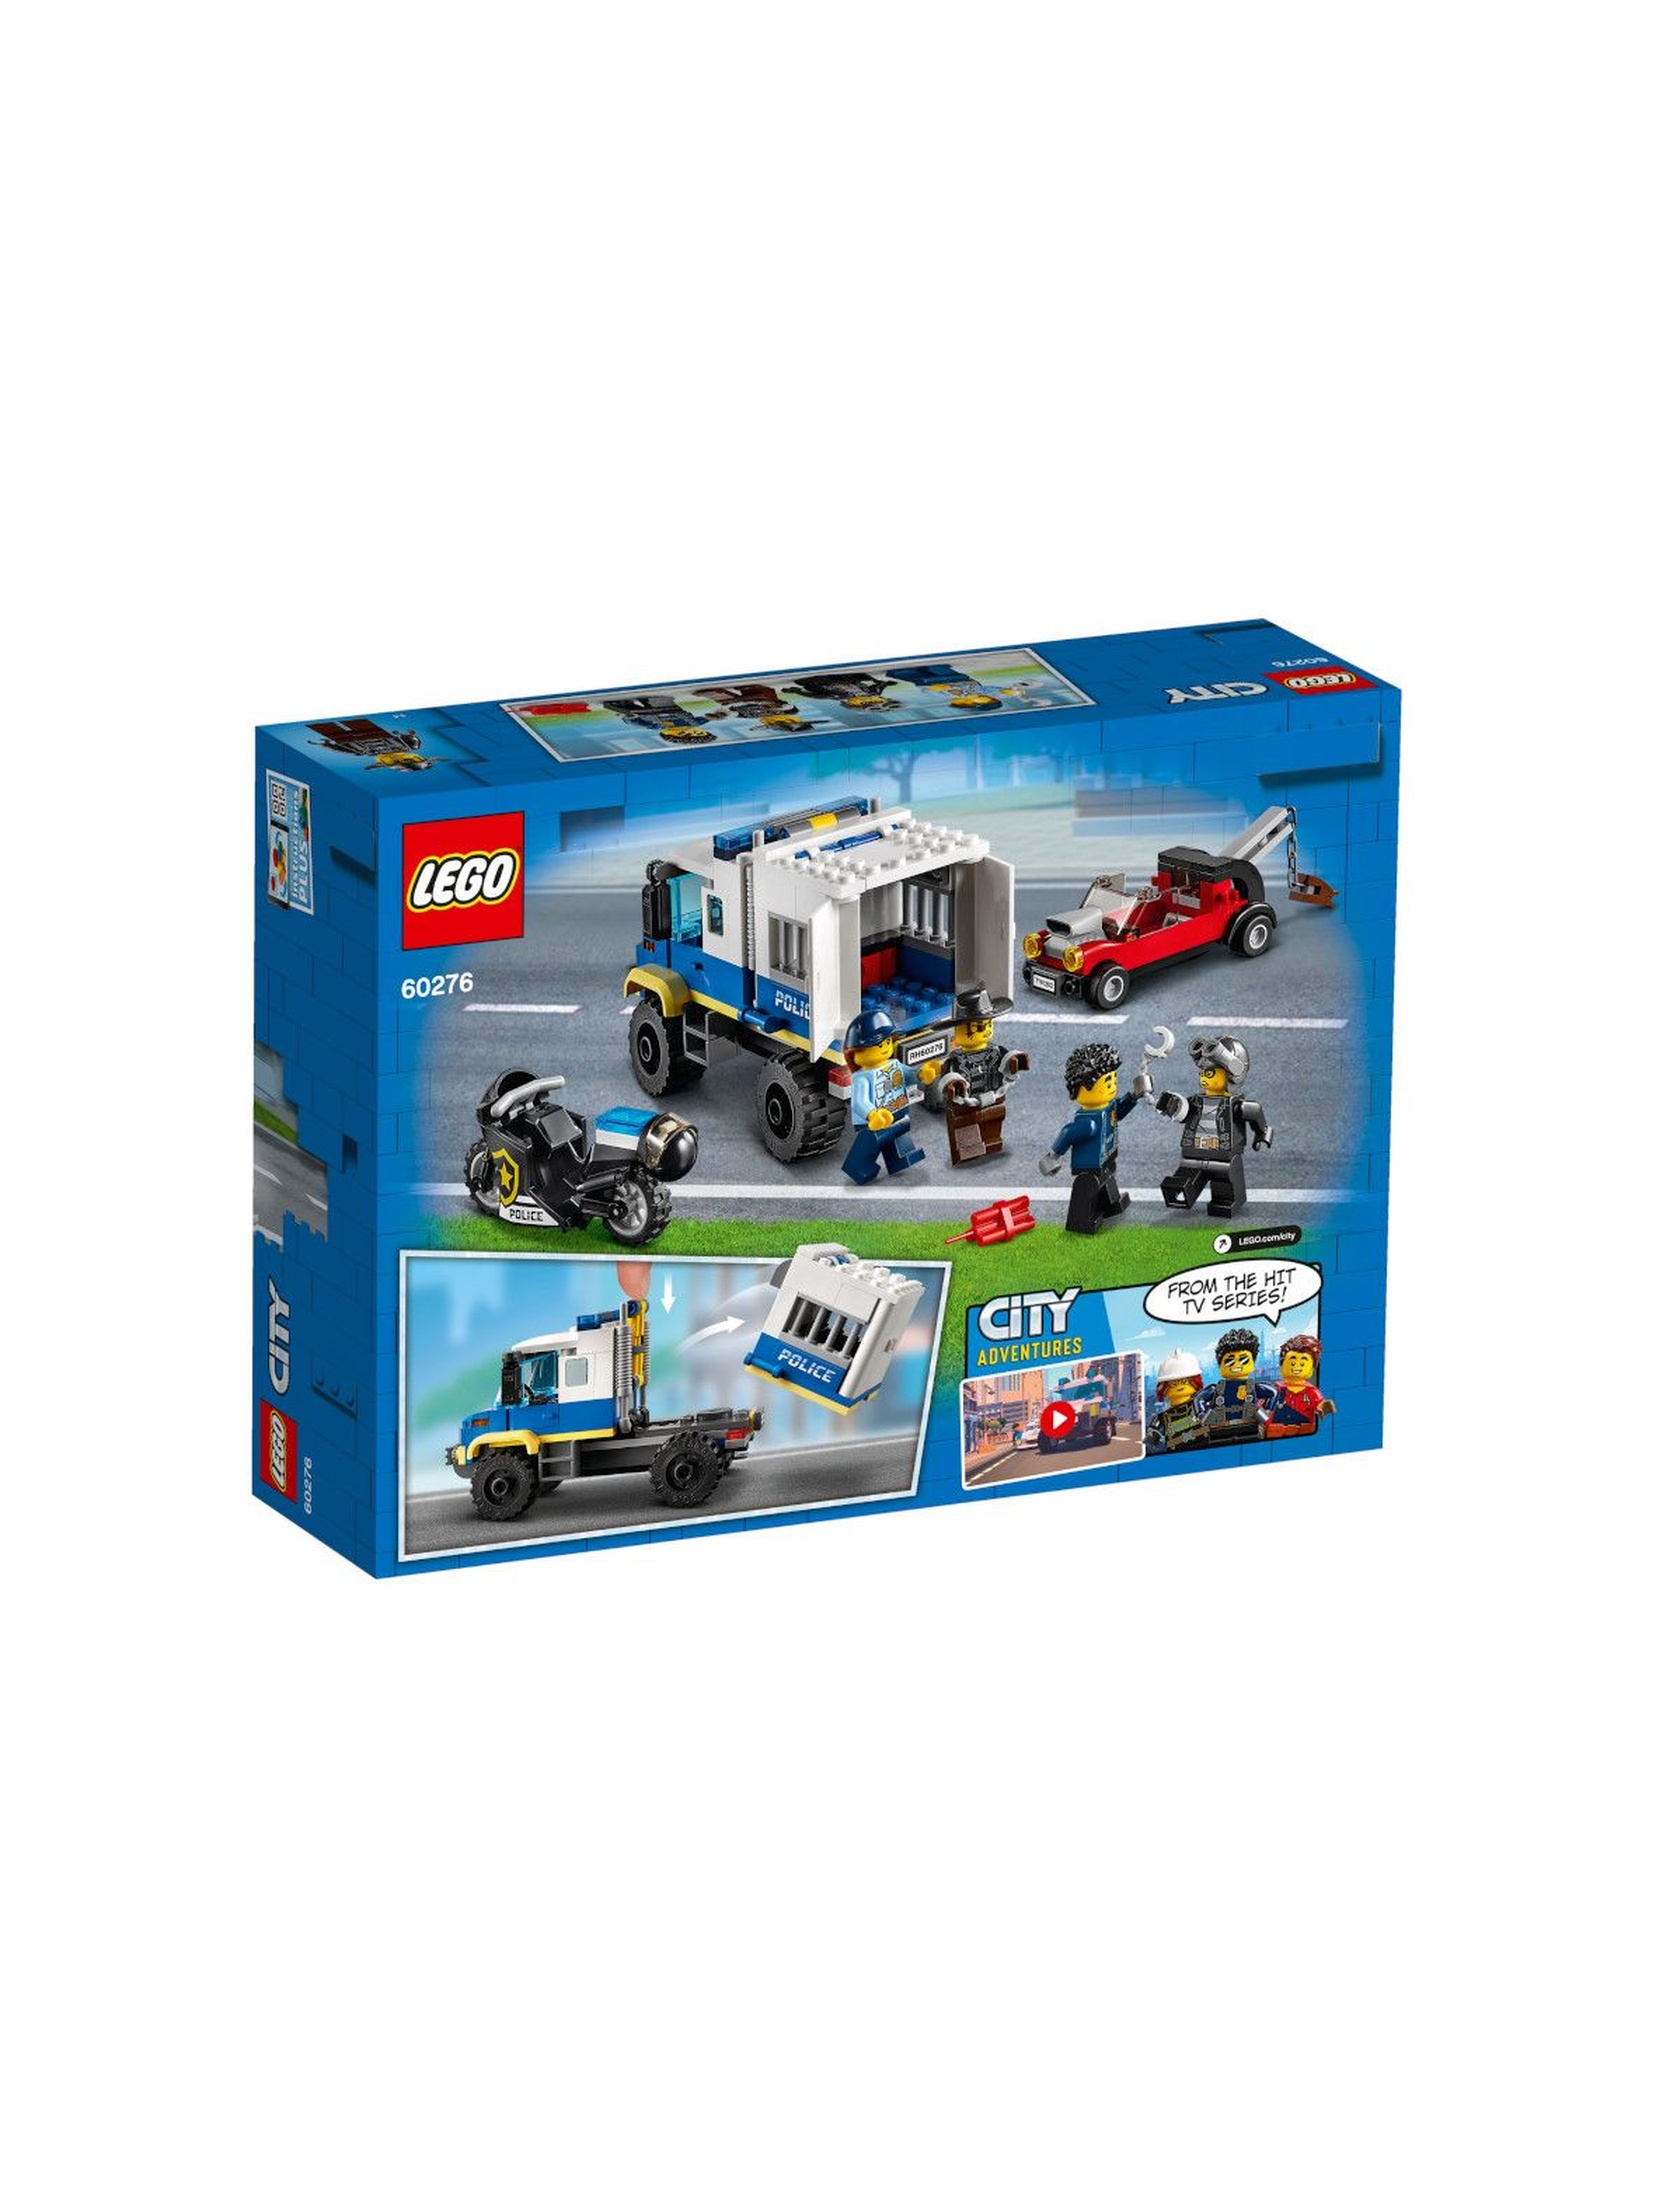 LEGO City - Policyjny konwój więzienny - 244 el